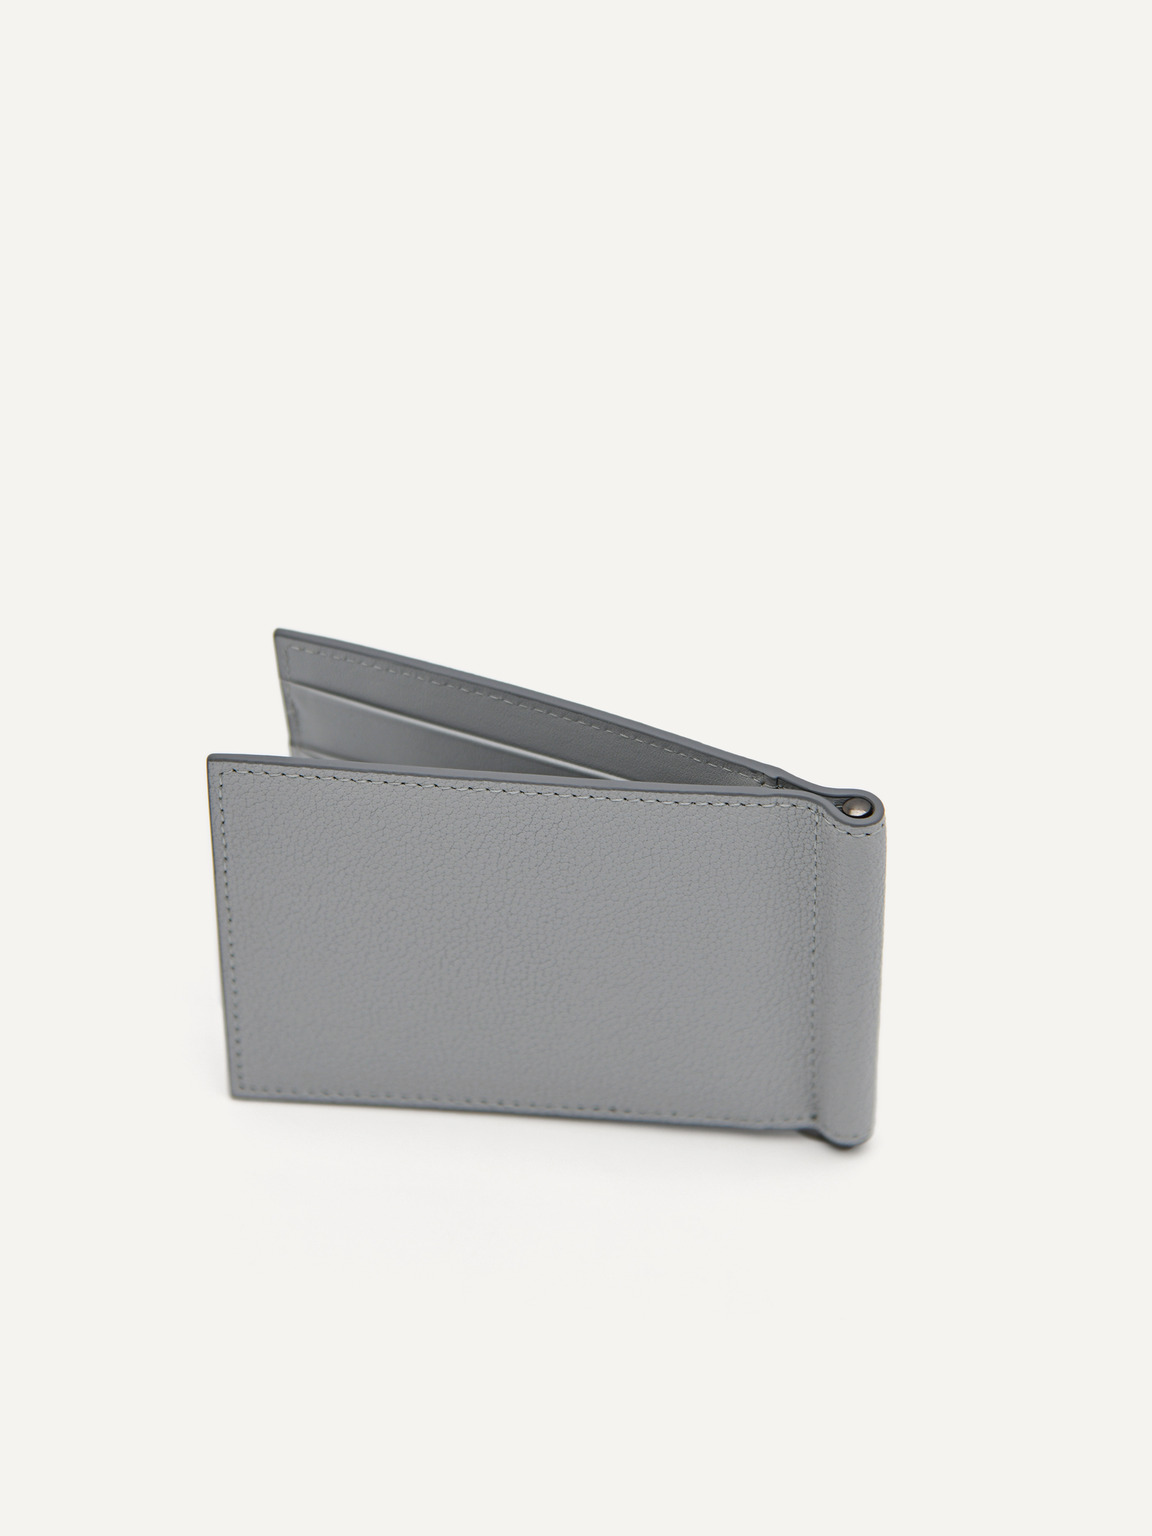 皮革雙折疊卡包帶錢夾, 浅灰色